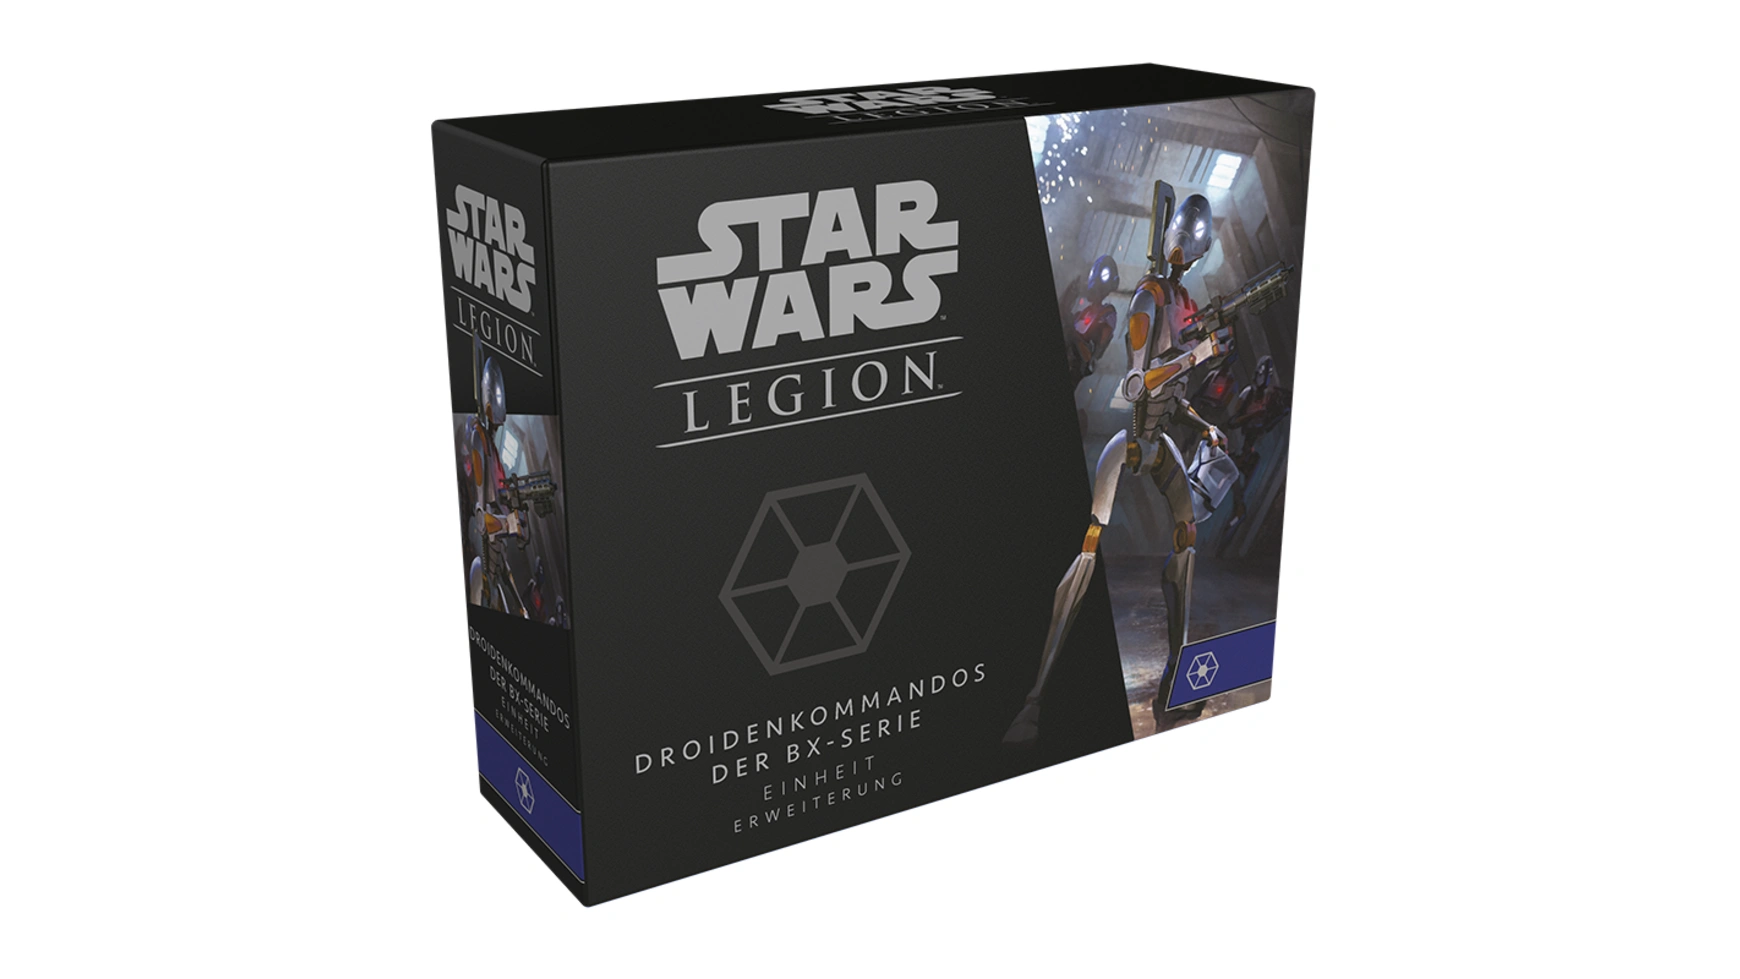 цена Fantasy Flight Games Star Wars: Legion Дроиды-коммандос серии BX Expansion DE